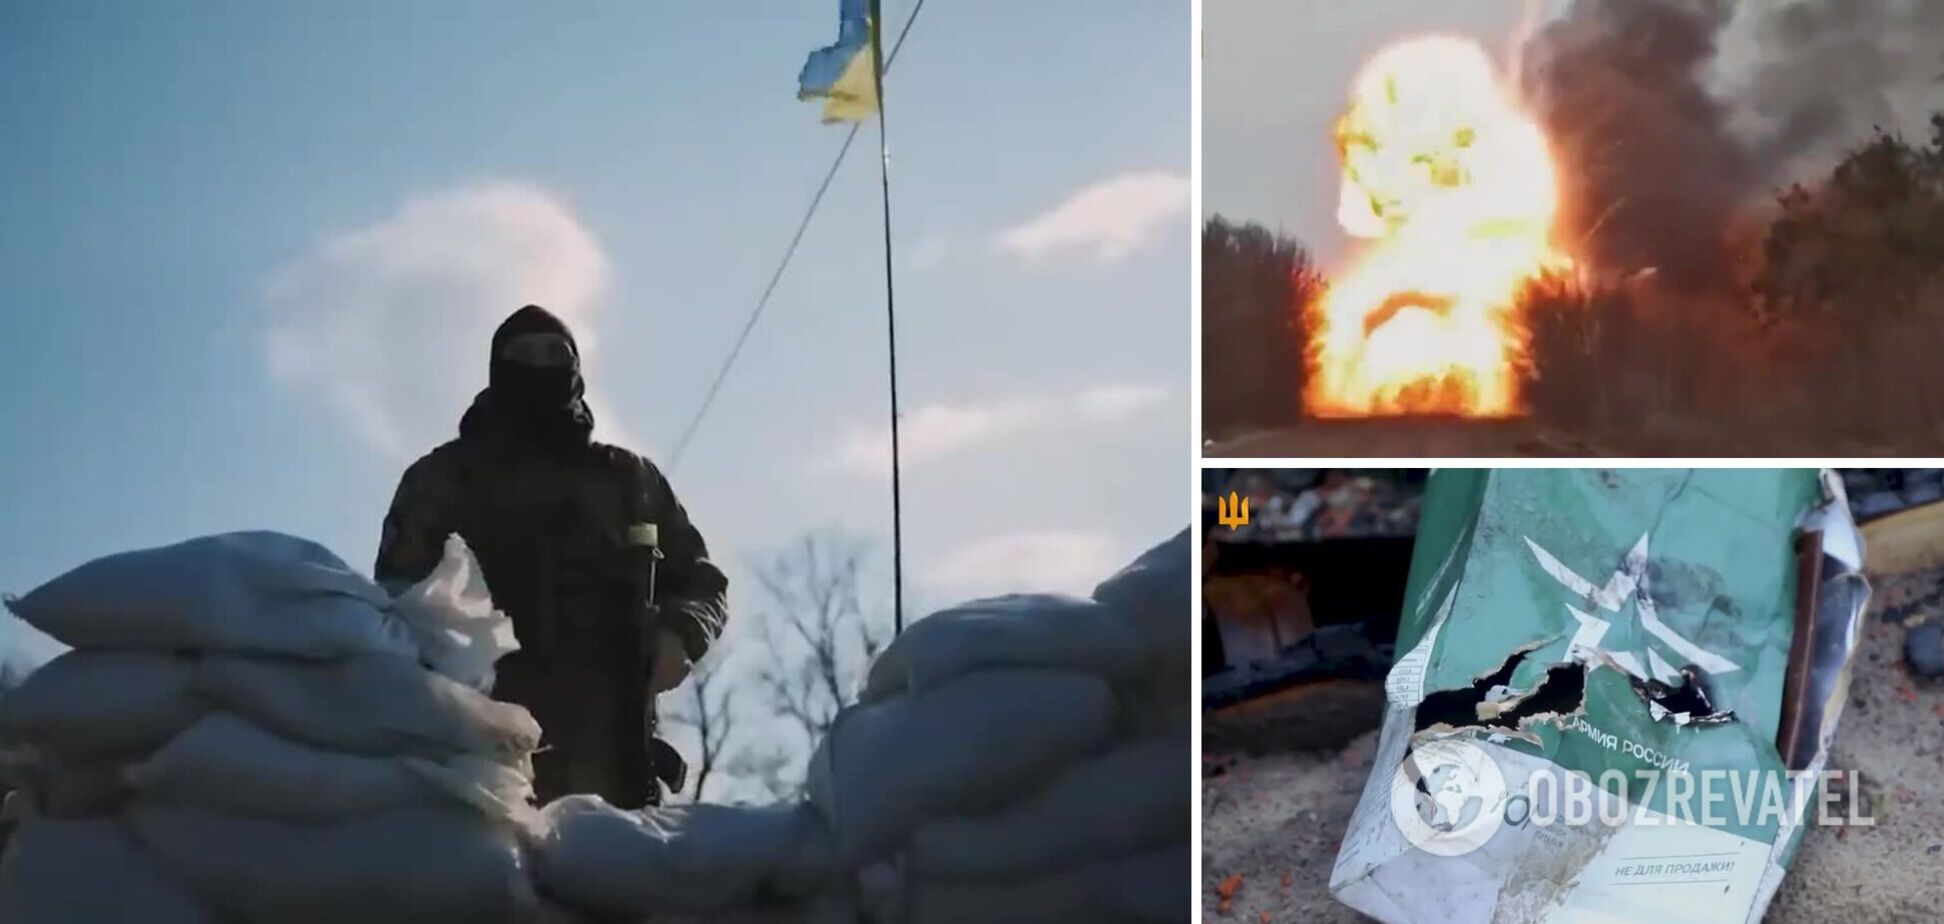 Залужный в годовщину освобождения от оккупантов Сумщины напомнил о подвиге украинских защитников: вы приближаете нашу победу